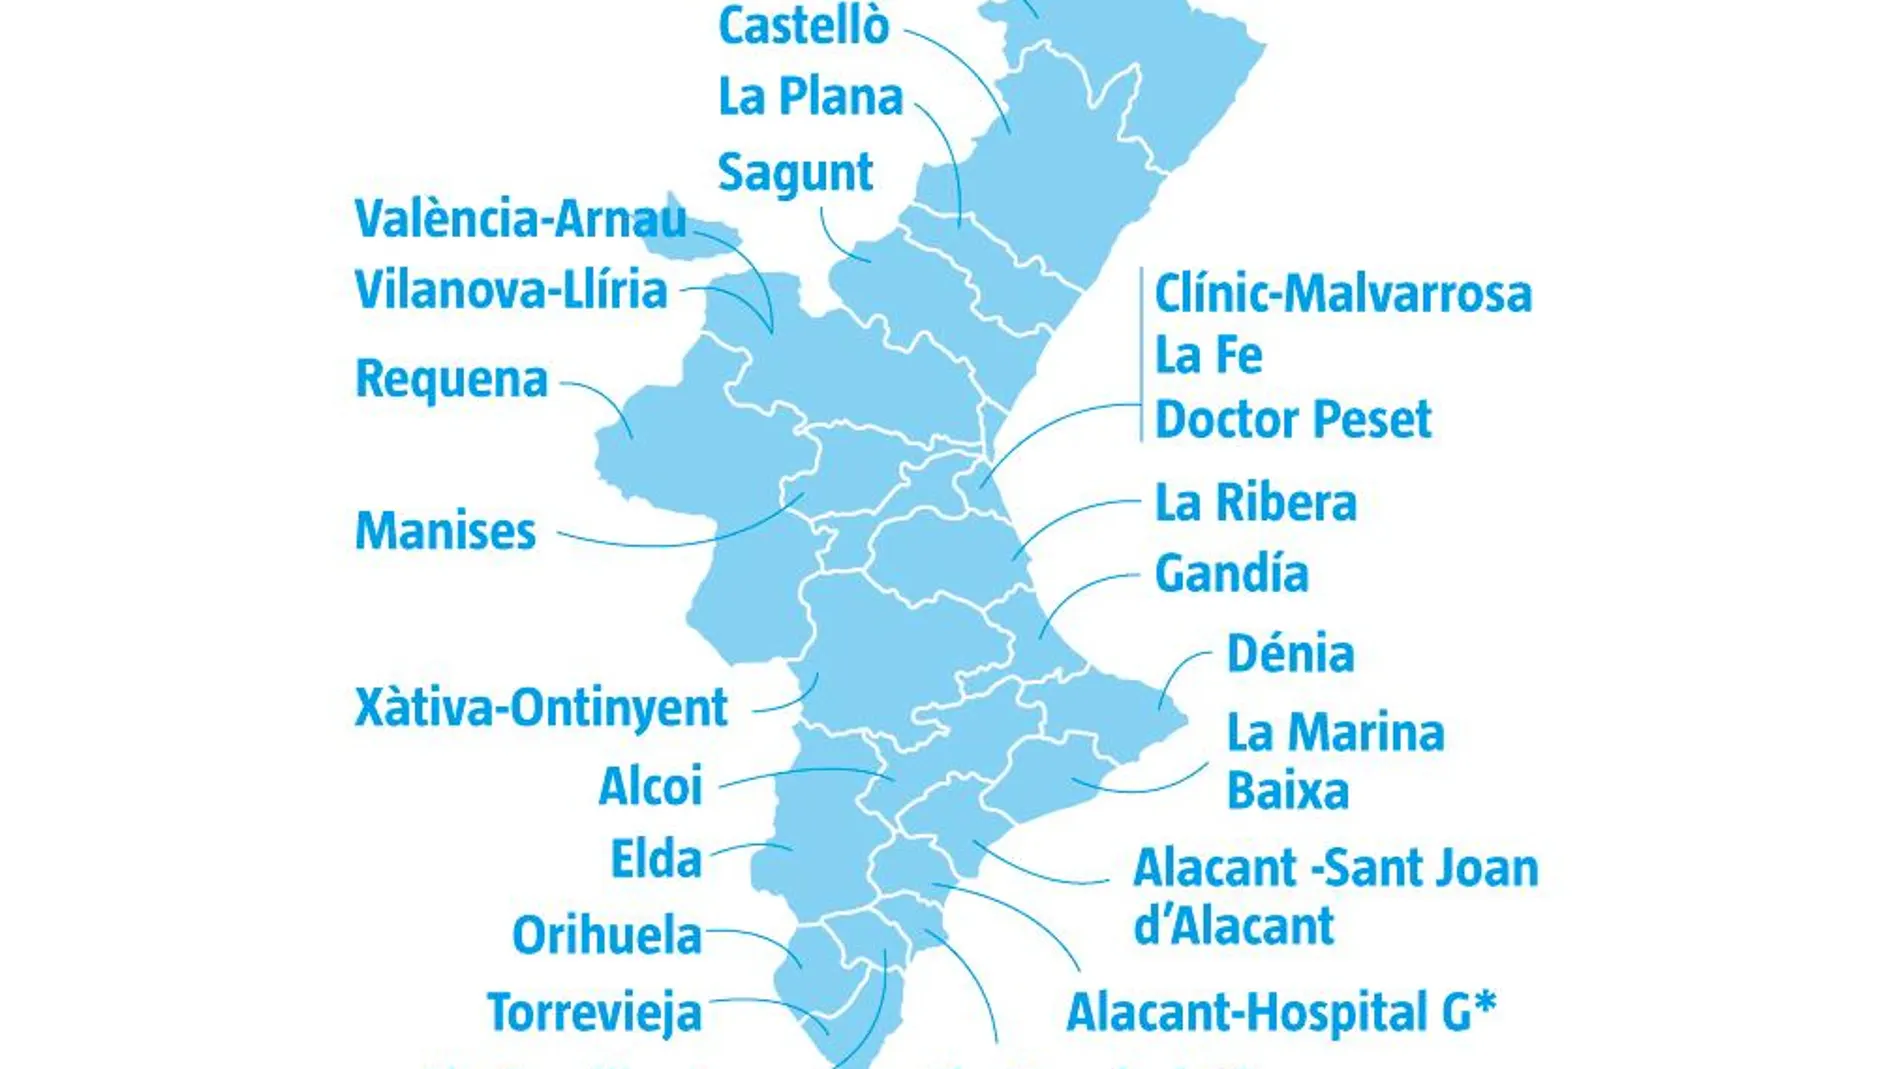 Las 24 zonas elegidas para la desescalada en la Comunitat Valenciana